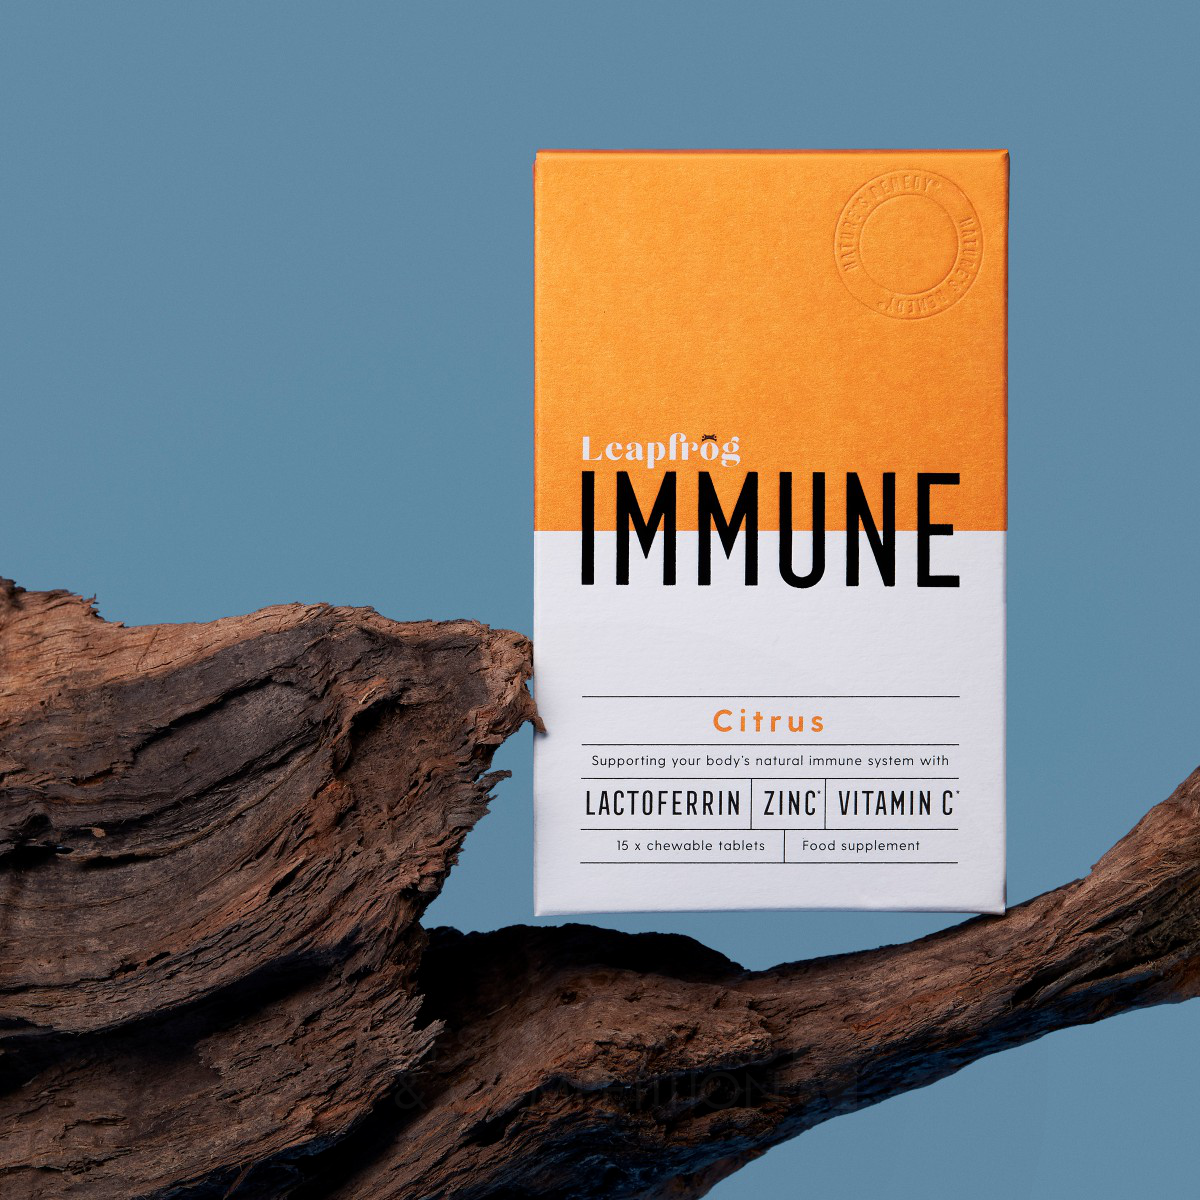 Leapfrog Immune Wellness Packaging by Jon Wallhouse